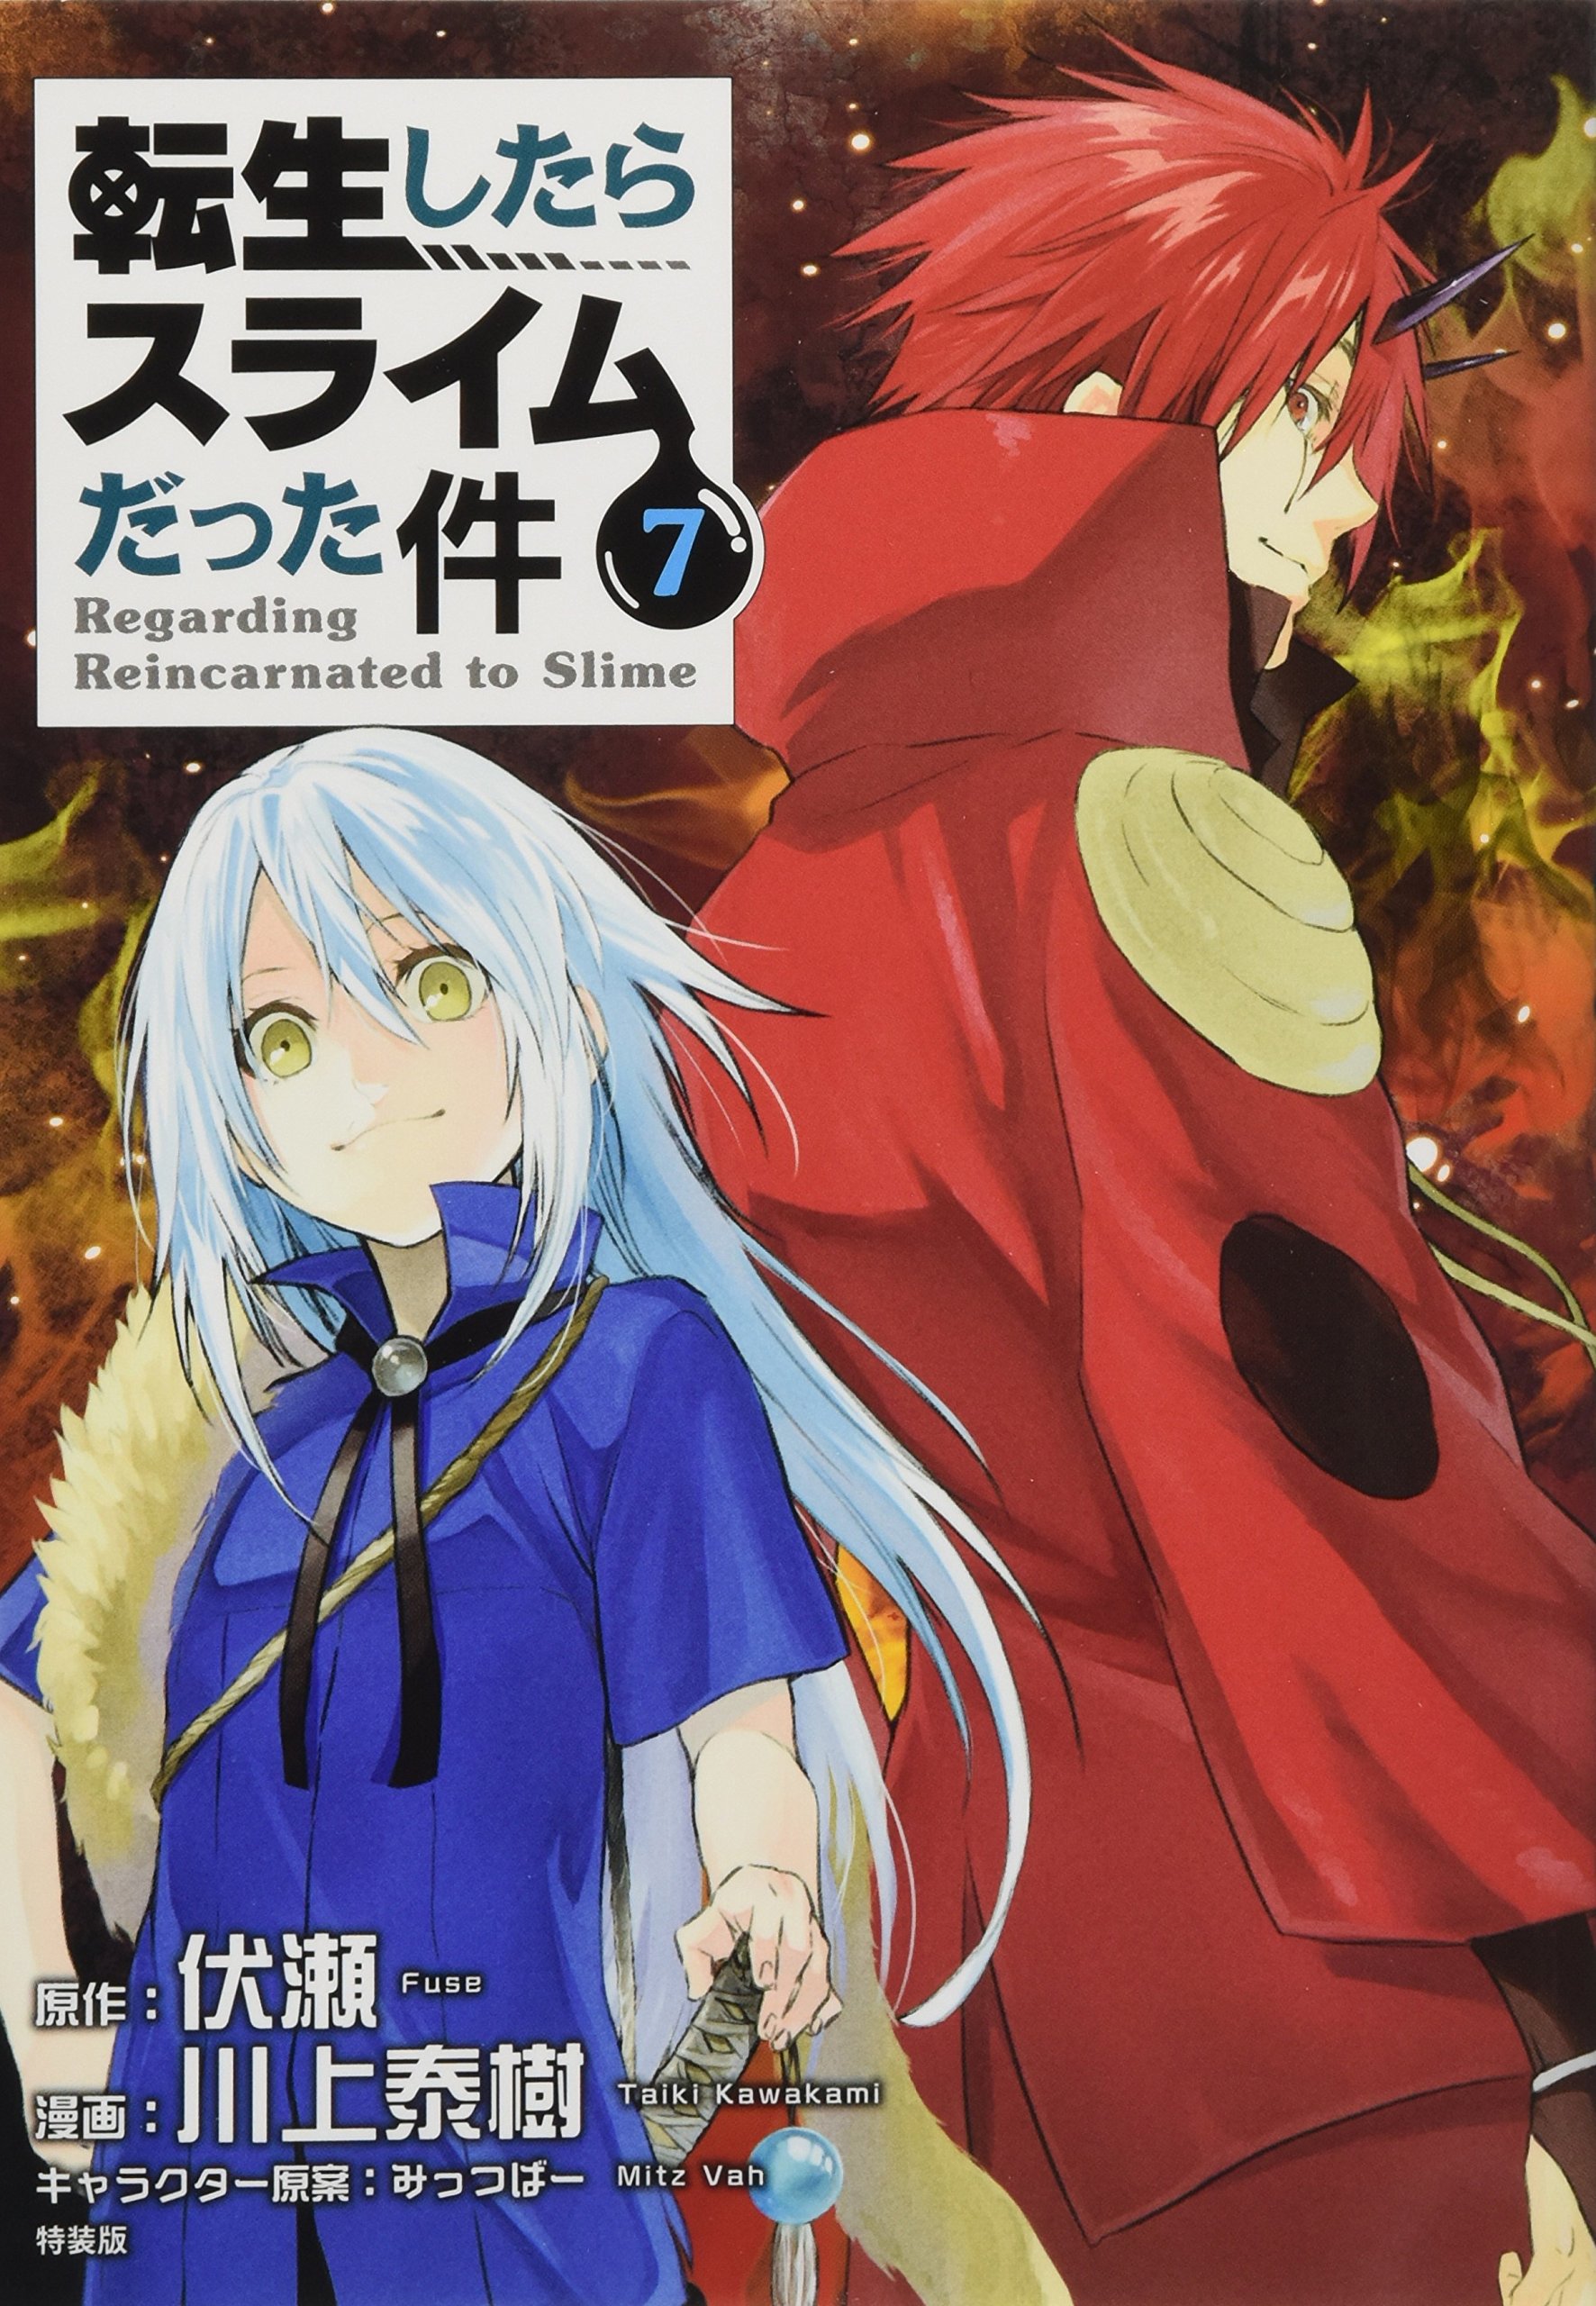 TENSEI SHITARA SLIME DATTA KEN in Light Novel – Review manga online for free